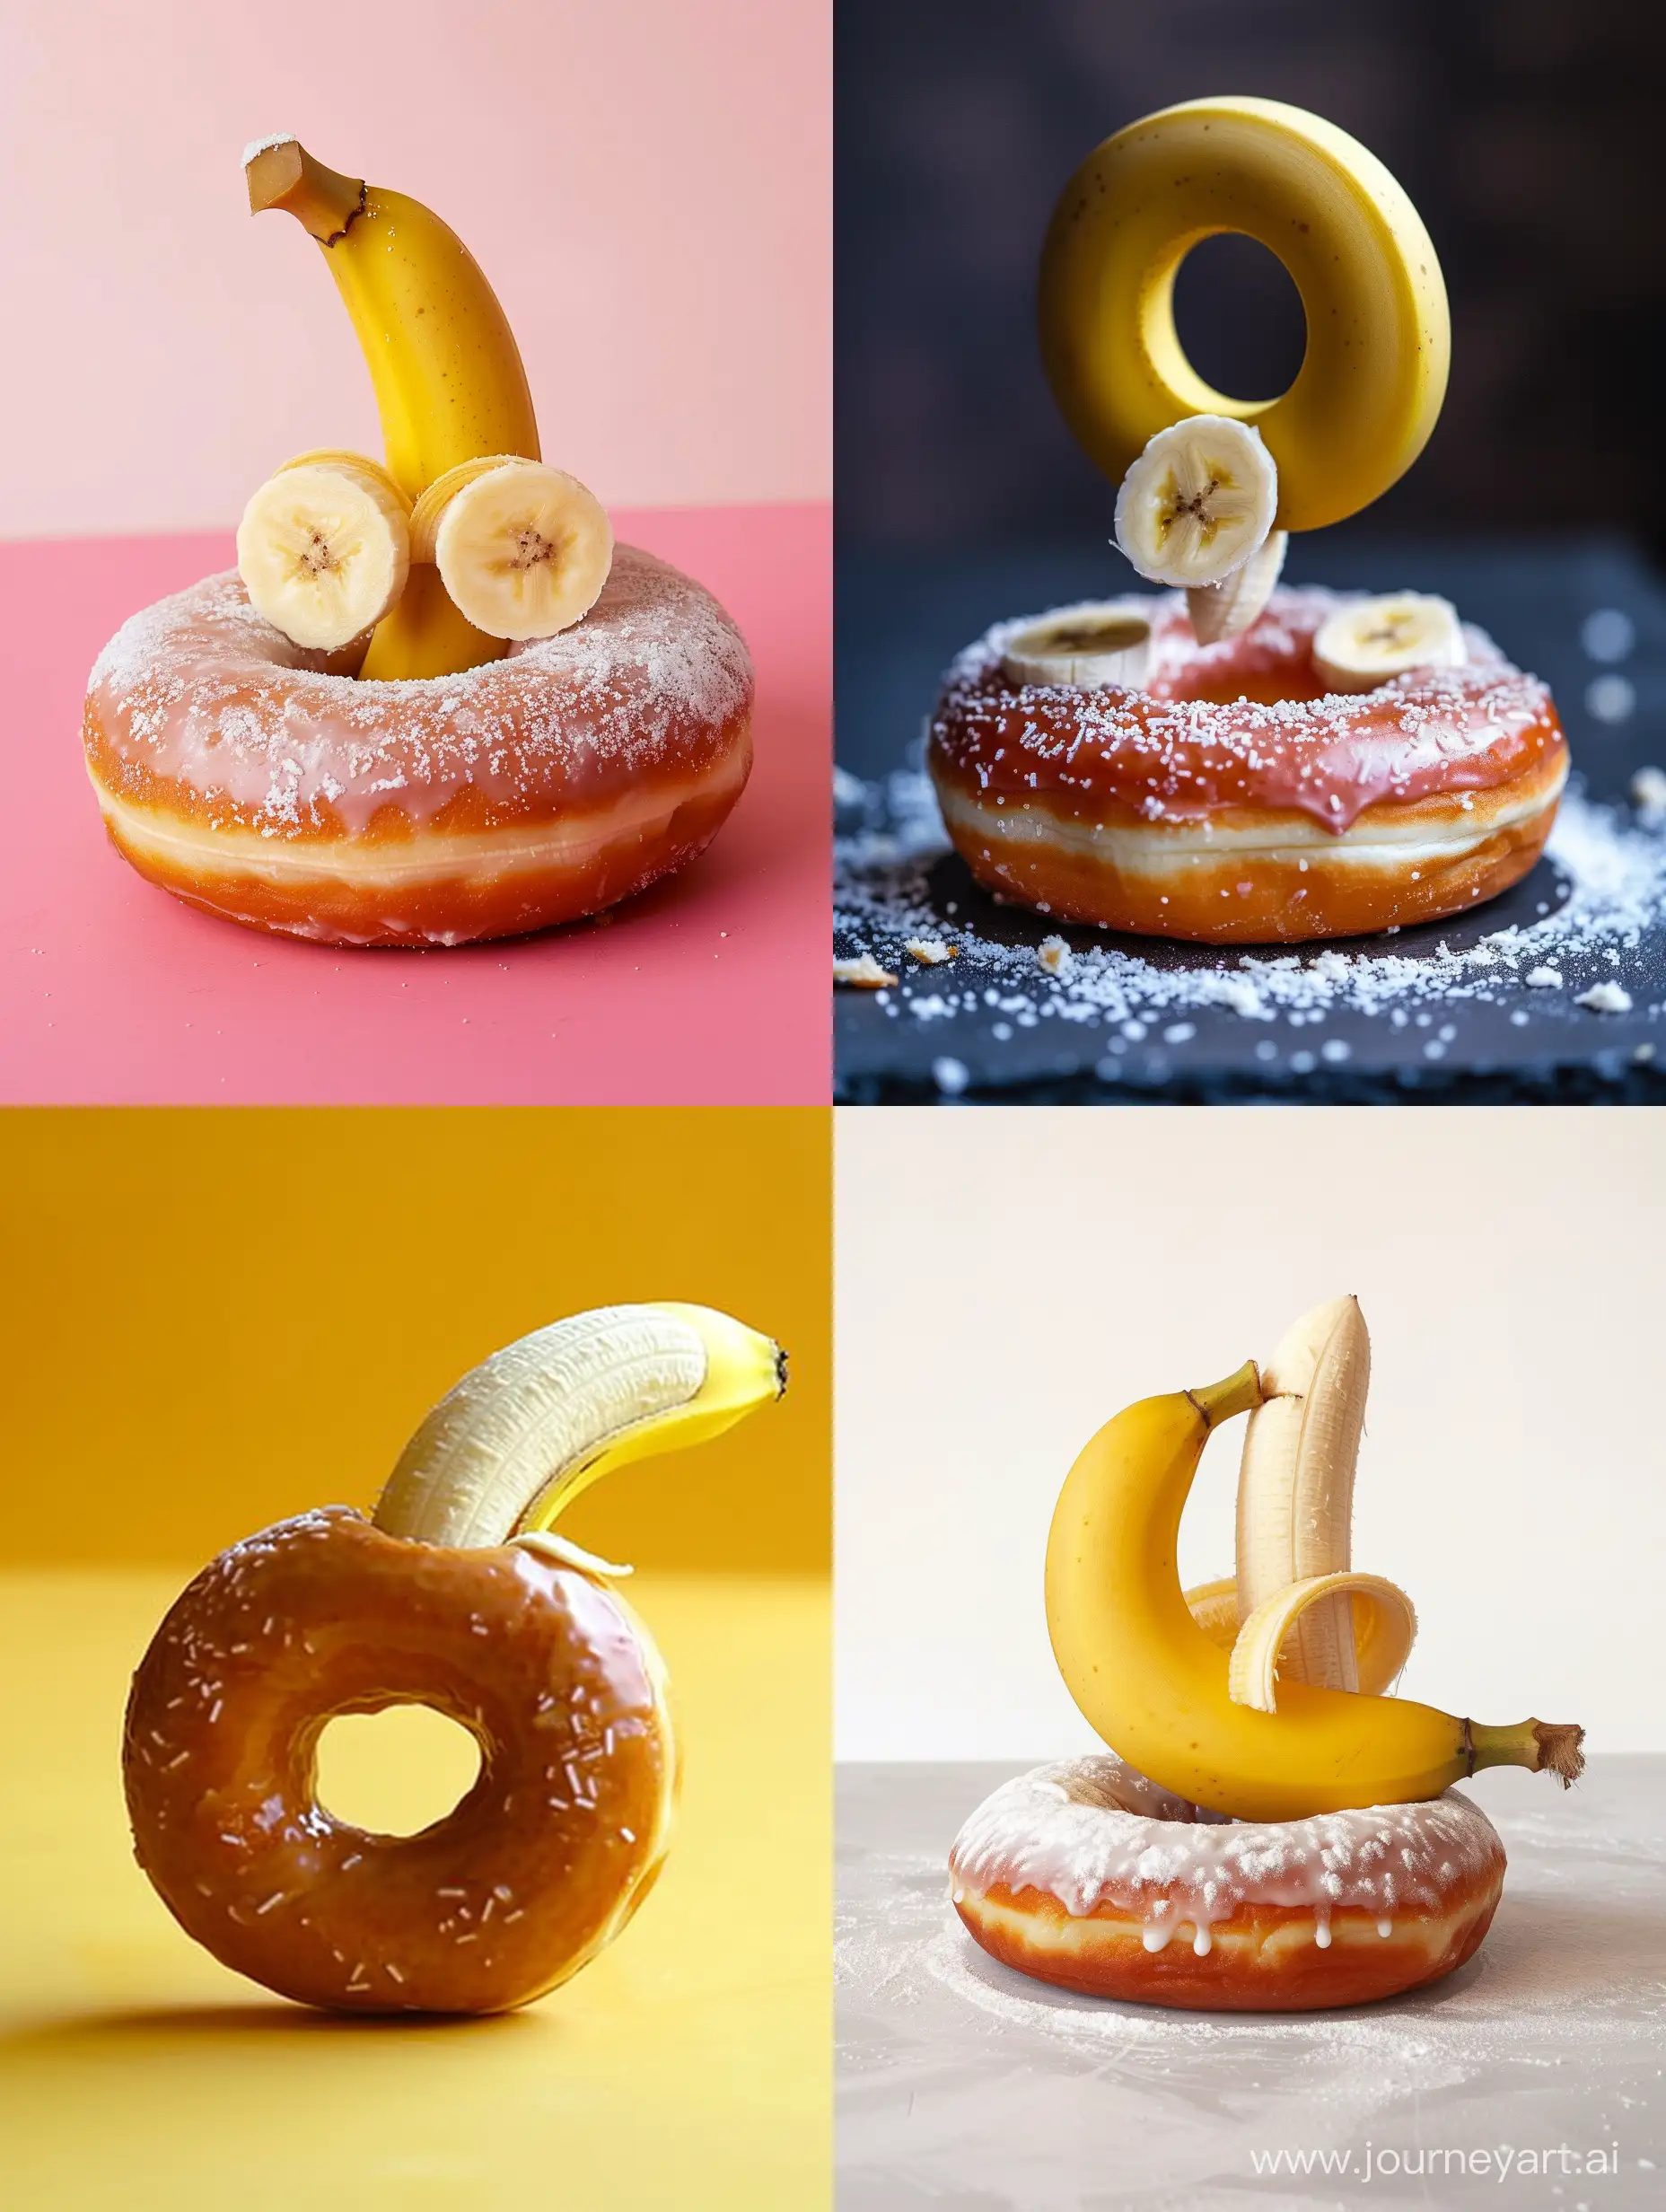 banana piercing through the center of a donut